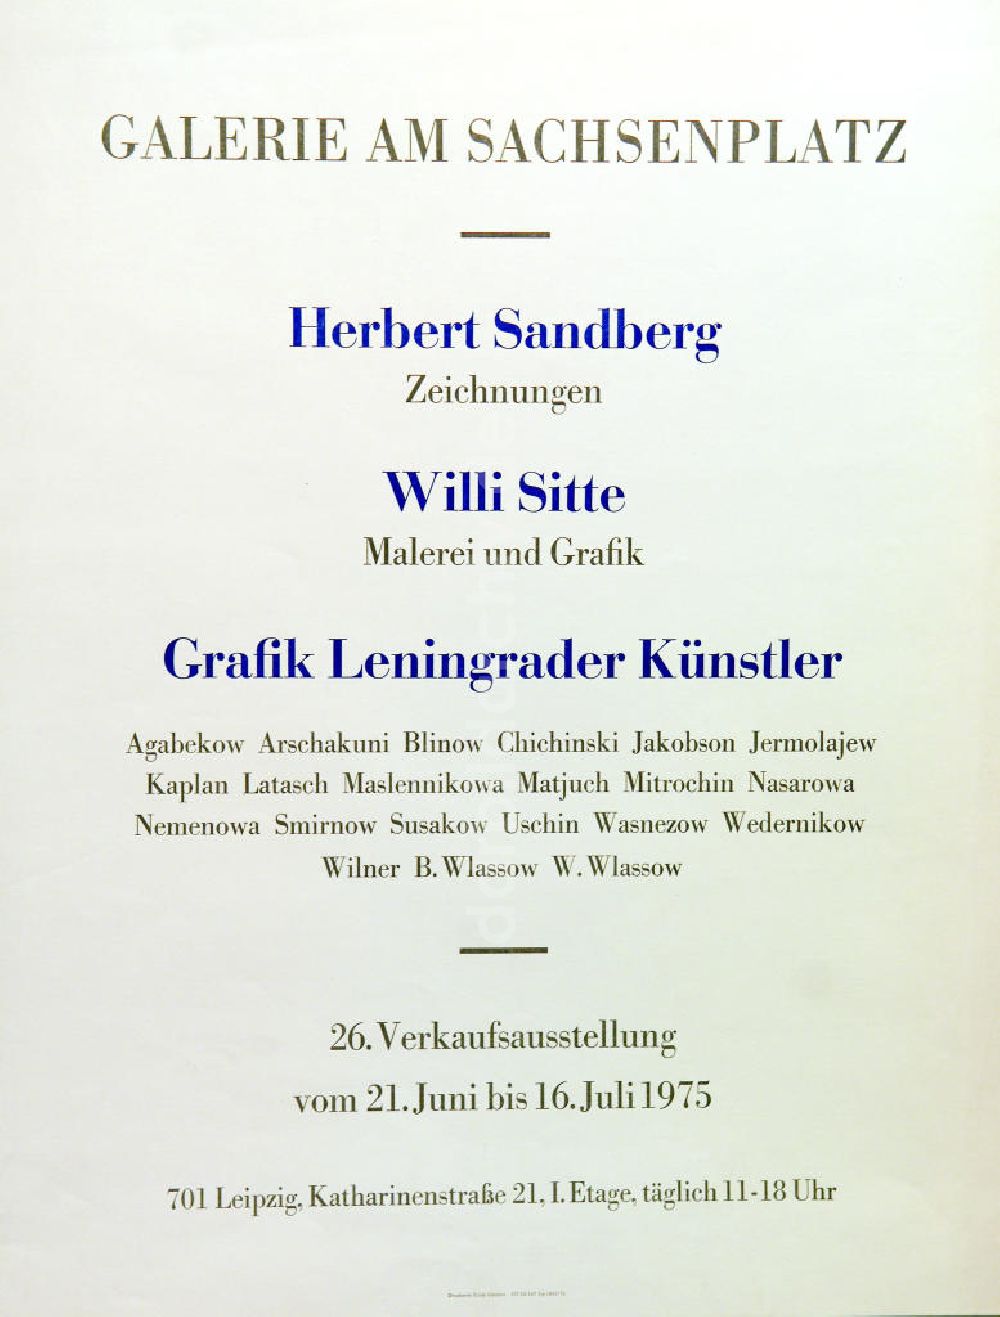 DDR-Fotoarchiv: Berlin - Plakat von der Ausstellung Herbert Sandberg Zeichnungen u.a. aus dem Jahr 1975